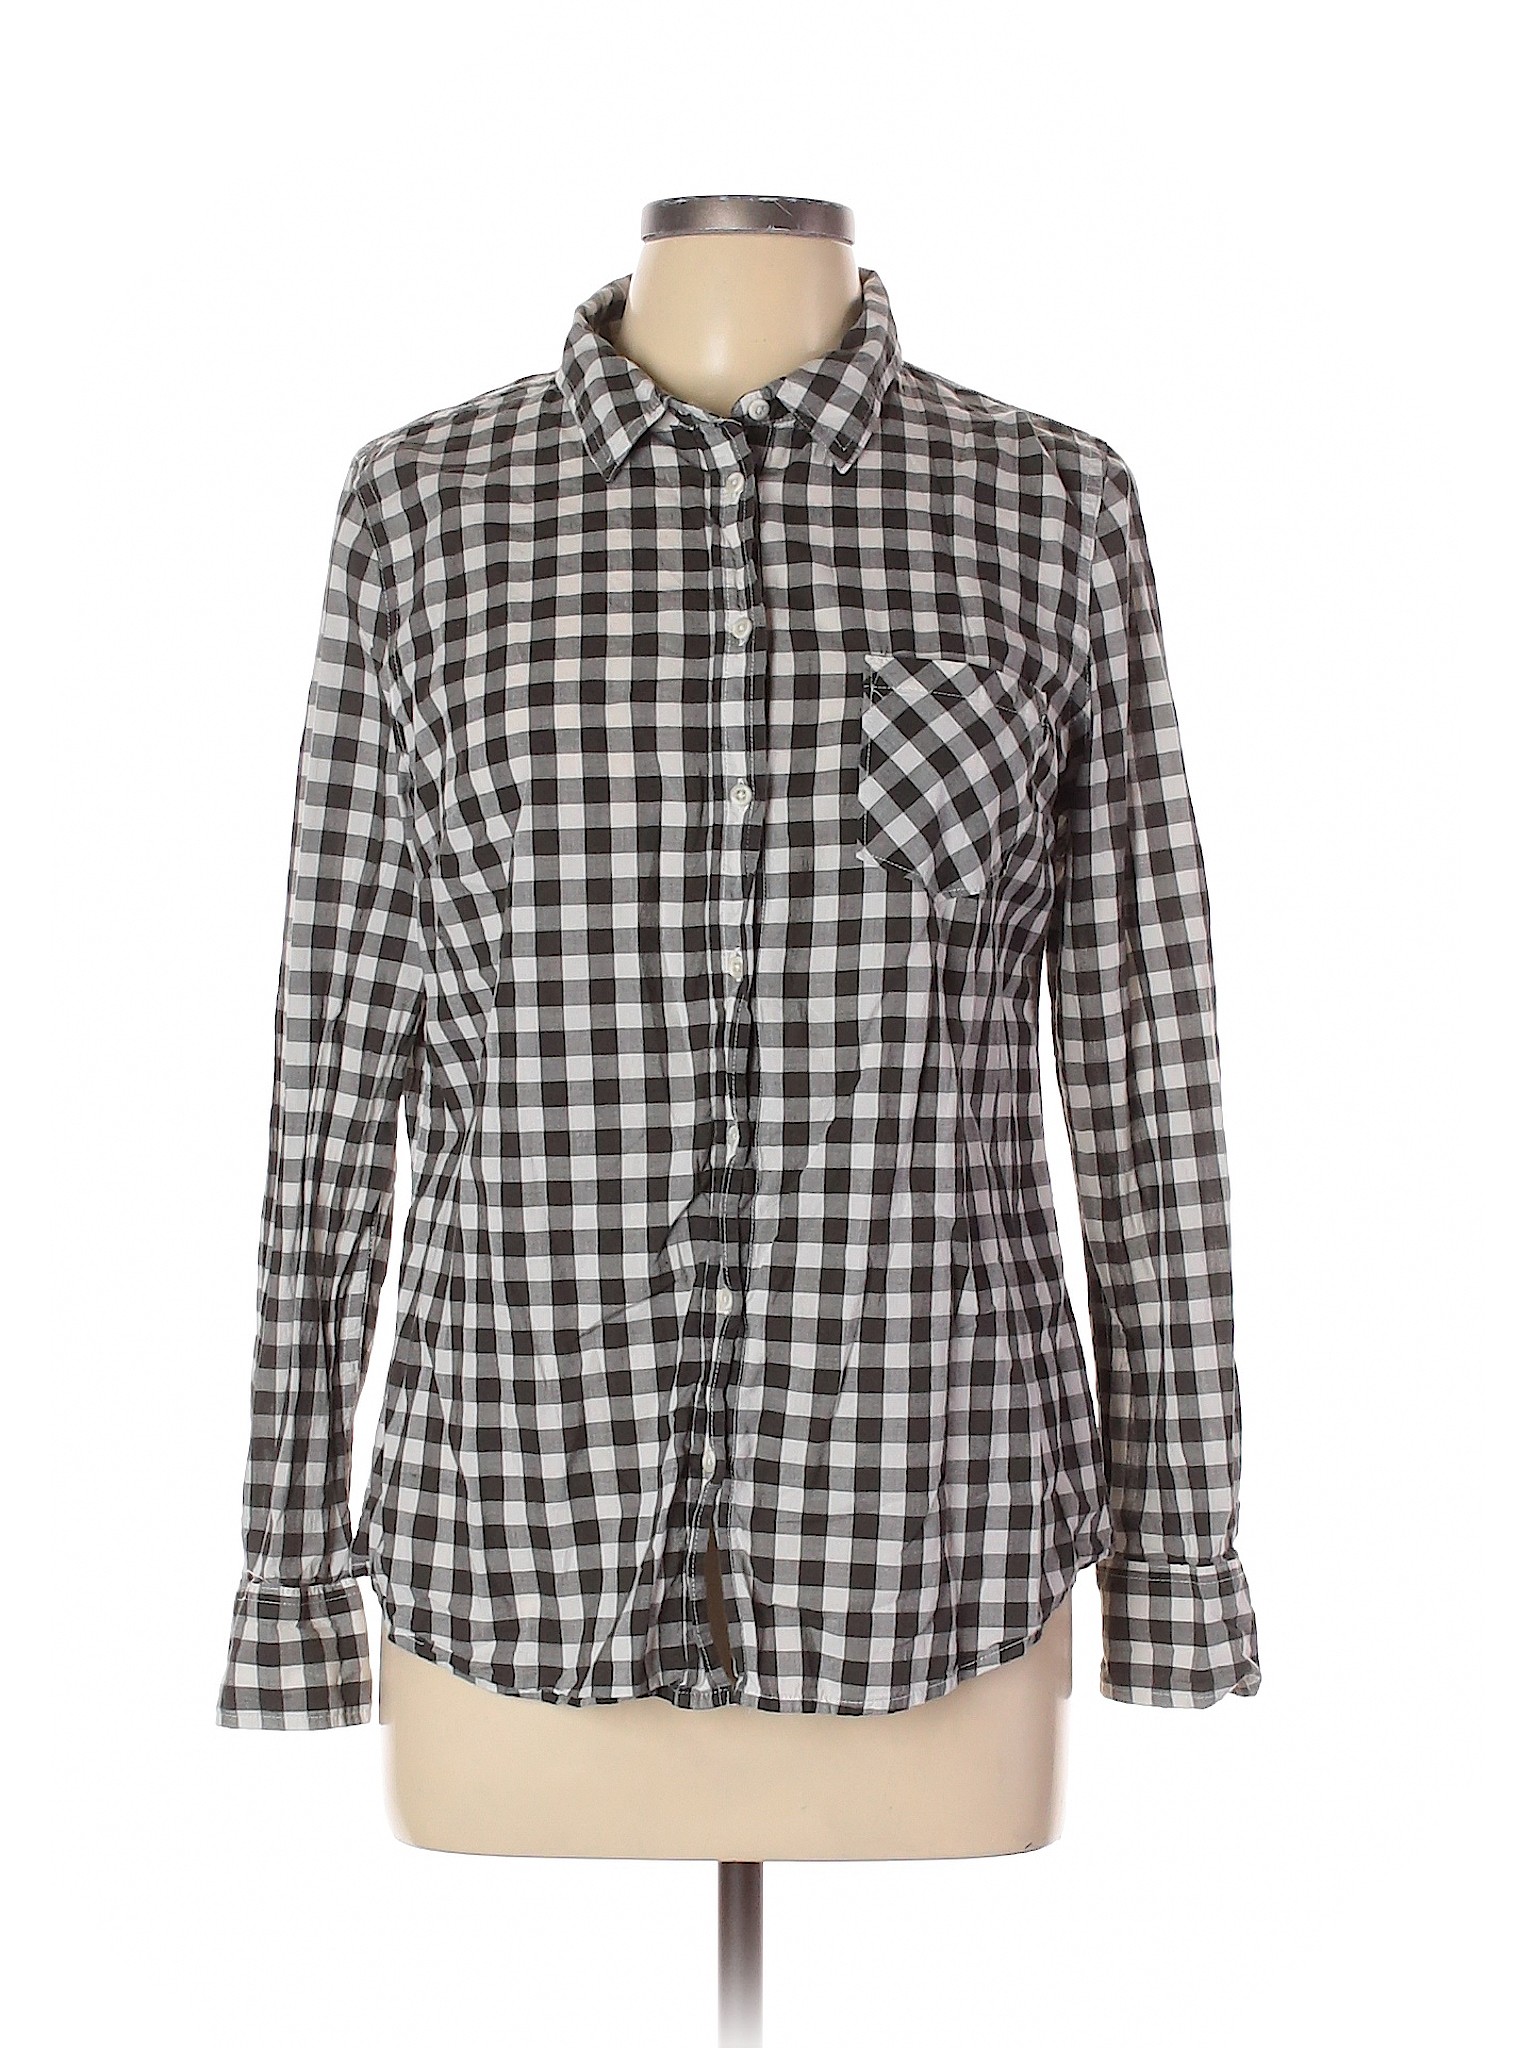 Merona Women Gray Long Sleeve Button-Down Shirt L | eBay